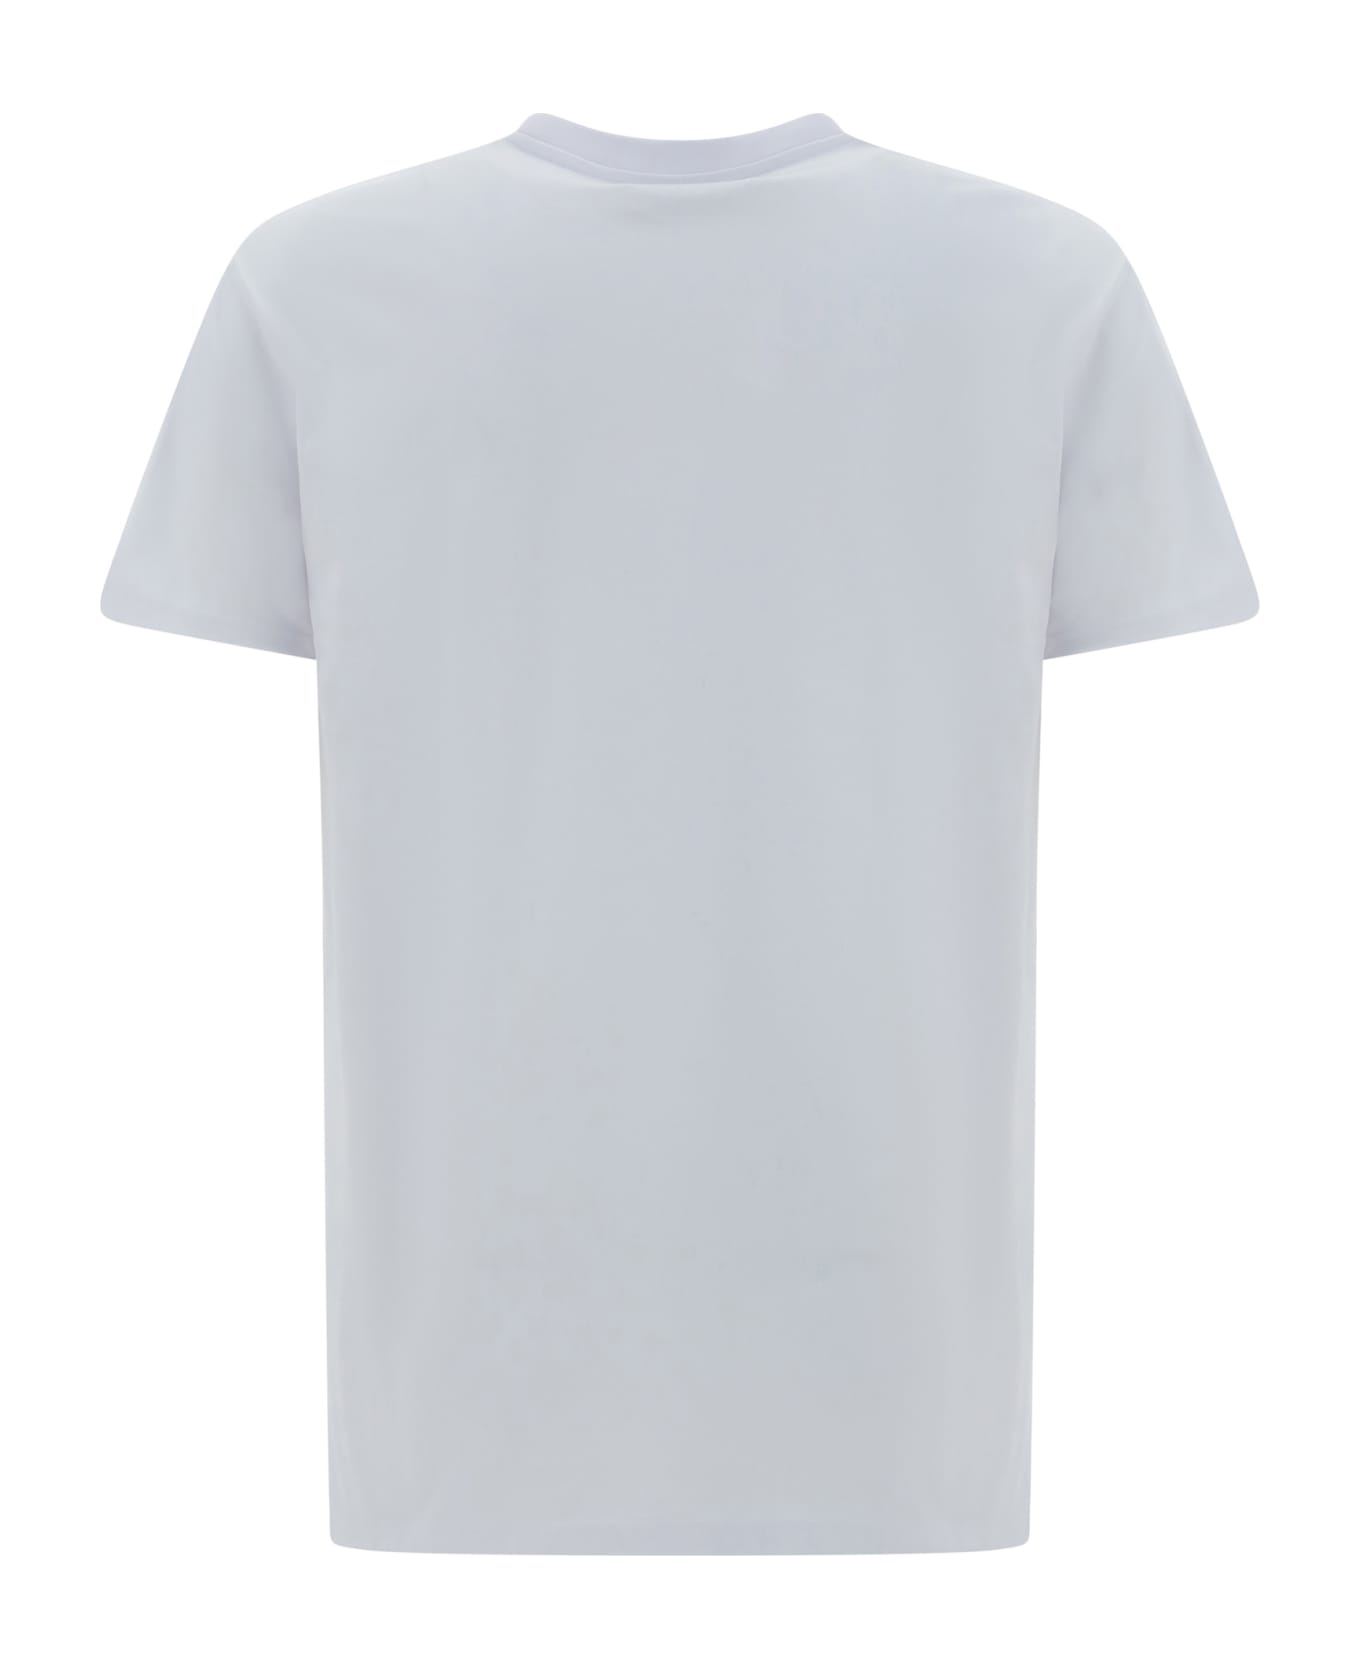 Vivienne Westwood Summer T-shirt - White Tシャツ